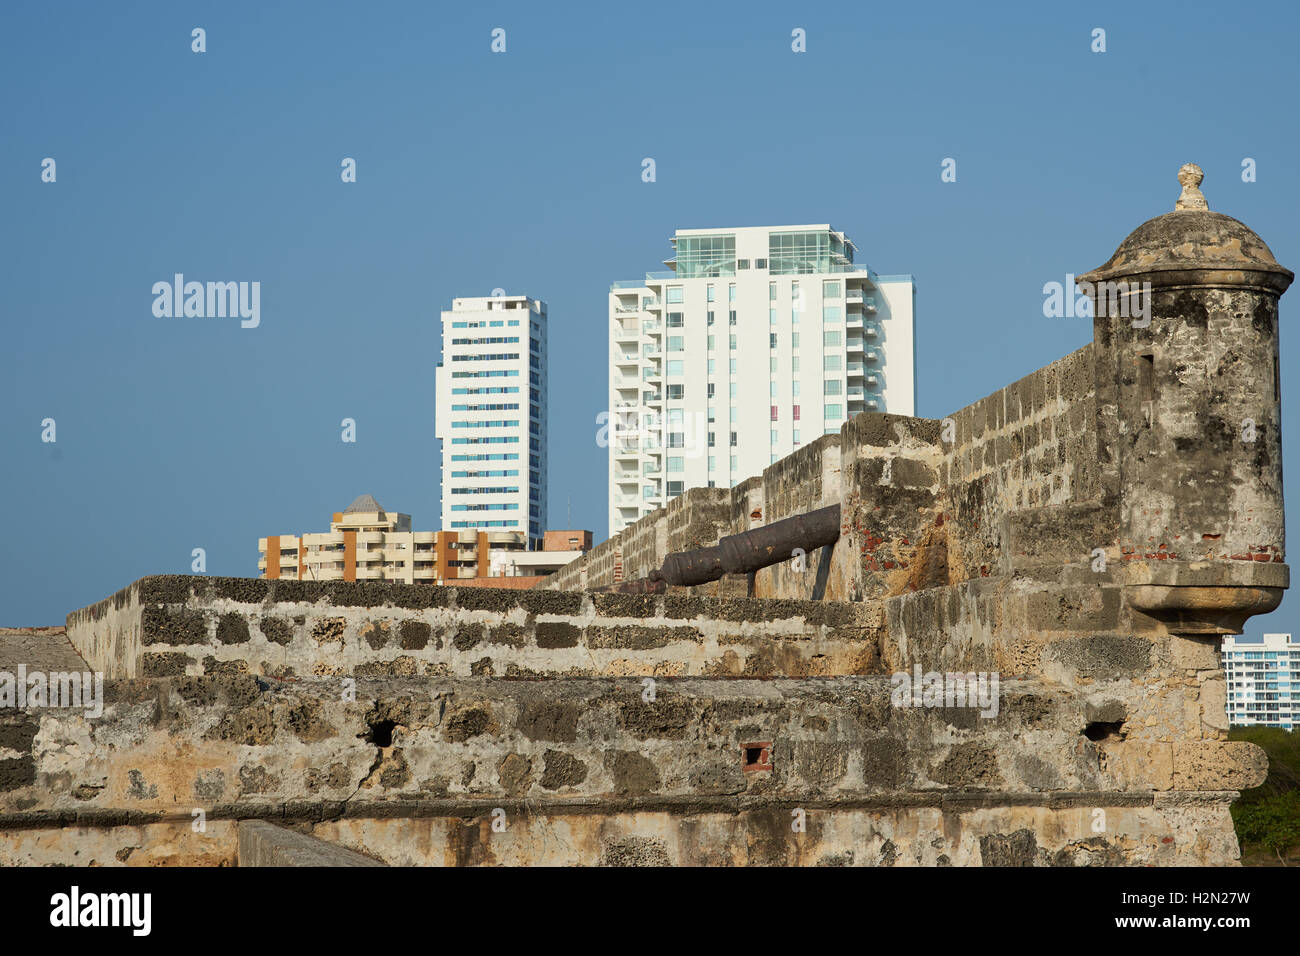 De nouveaux bâtiments se dressant au dessus de l'enceinte fortifiée historique de Cartagena de Indias en Colombie. Banque D'Images